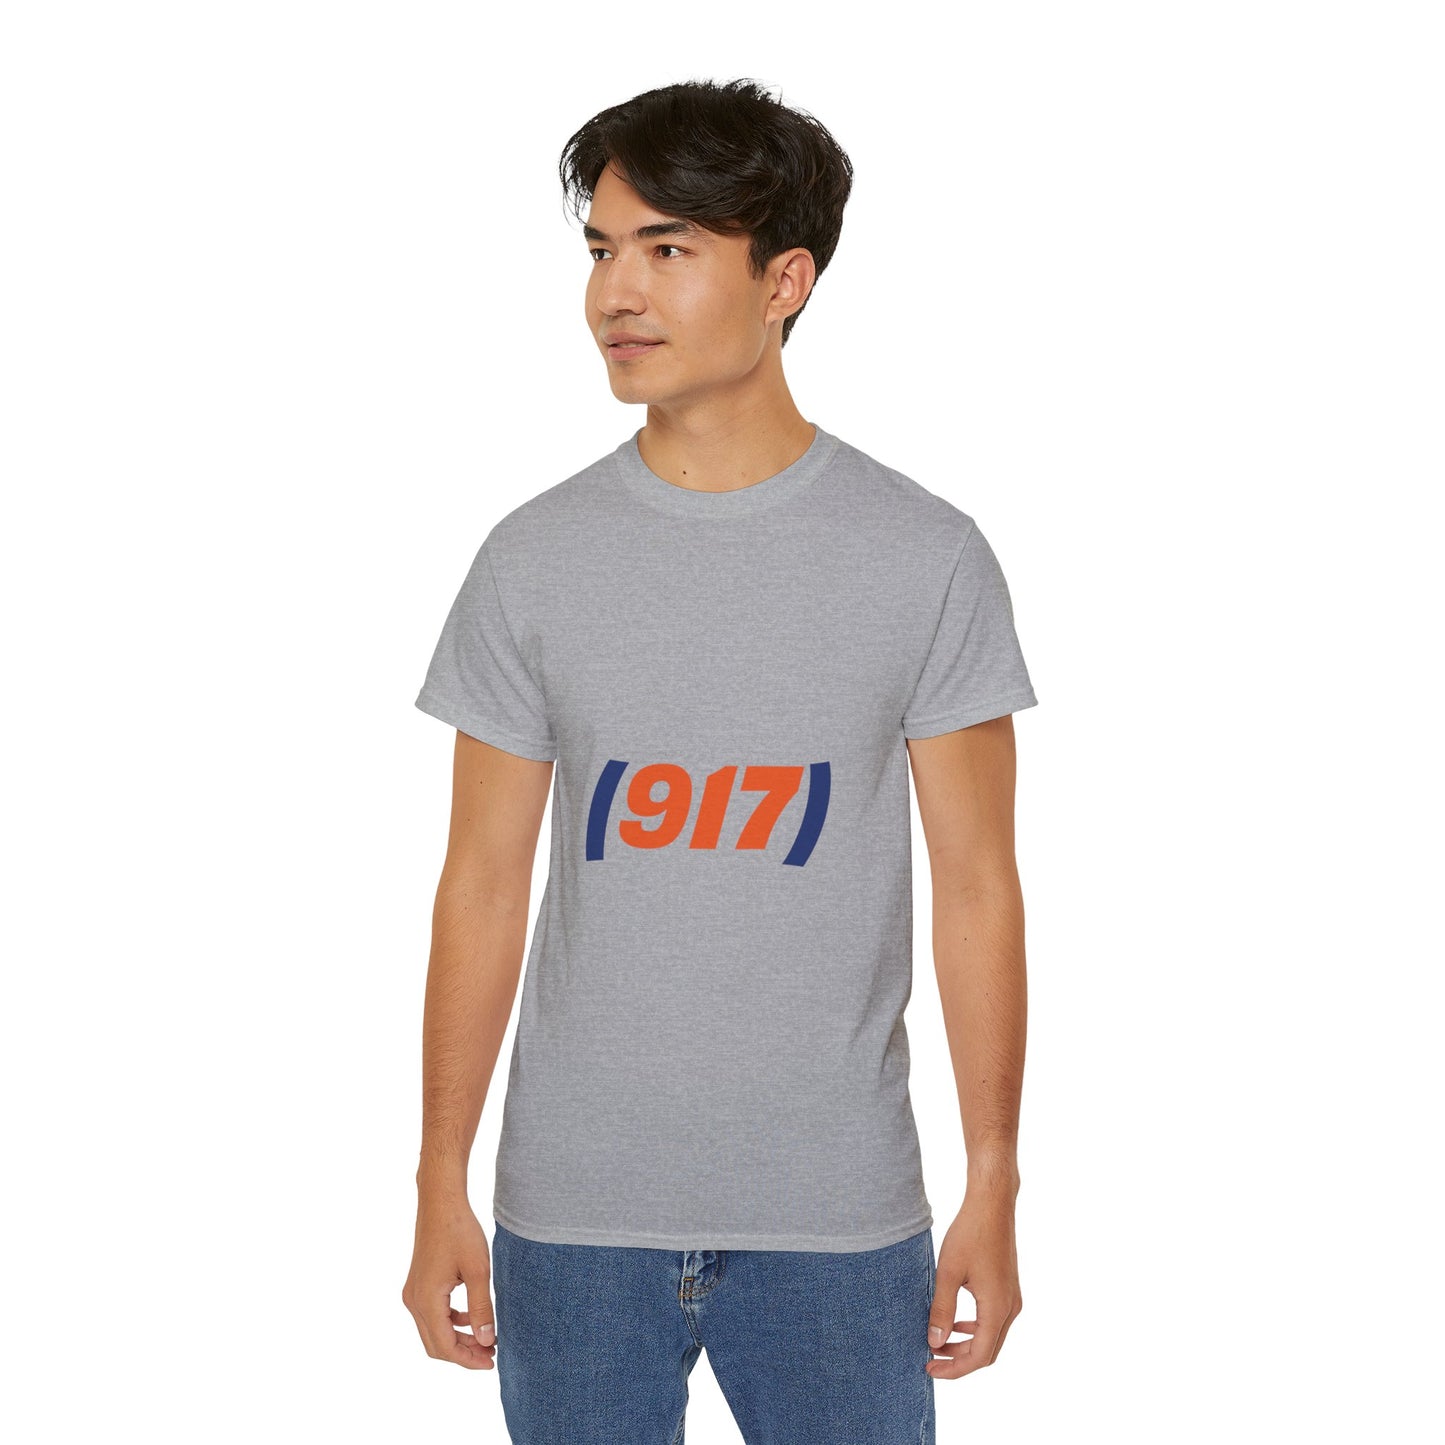 (917) T-Shirt